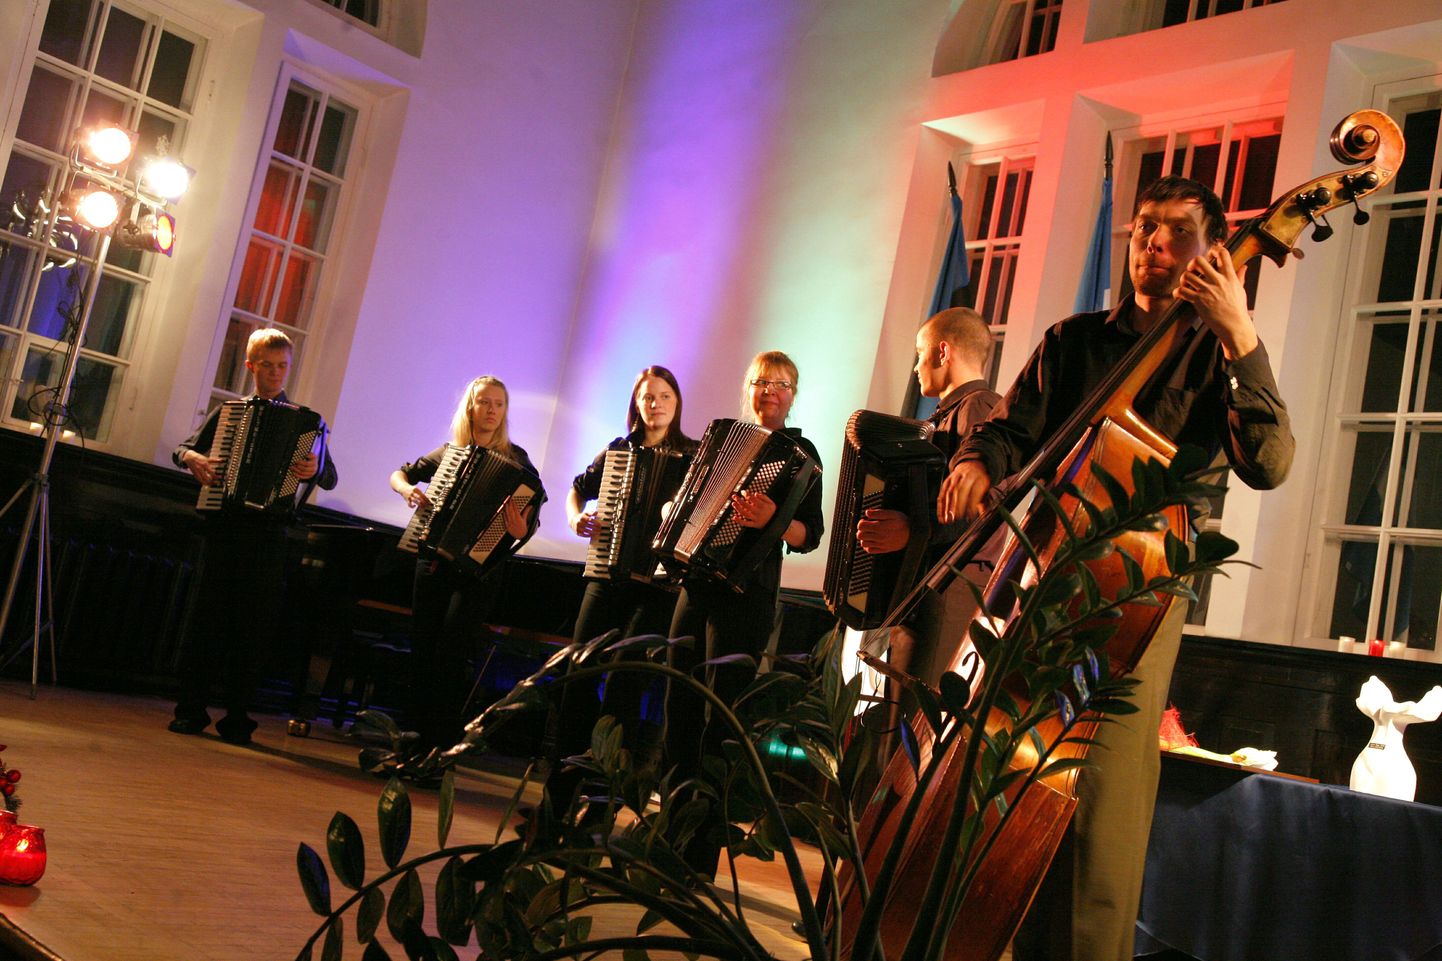 Muusikalist meeleolu jagas pidulikul vastuvõtul Pärnu Kunstide maja akordionistide ansambel.